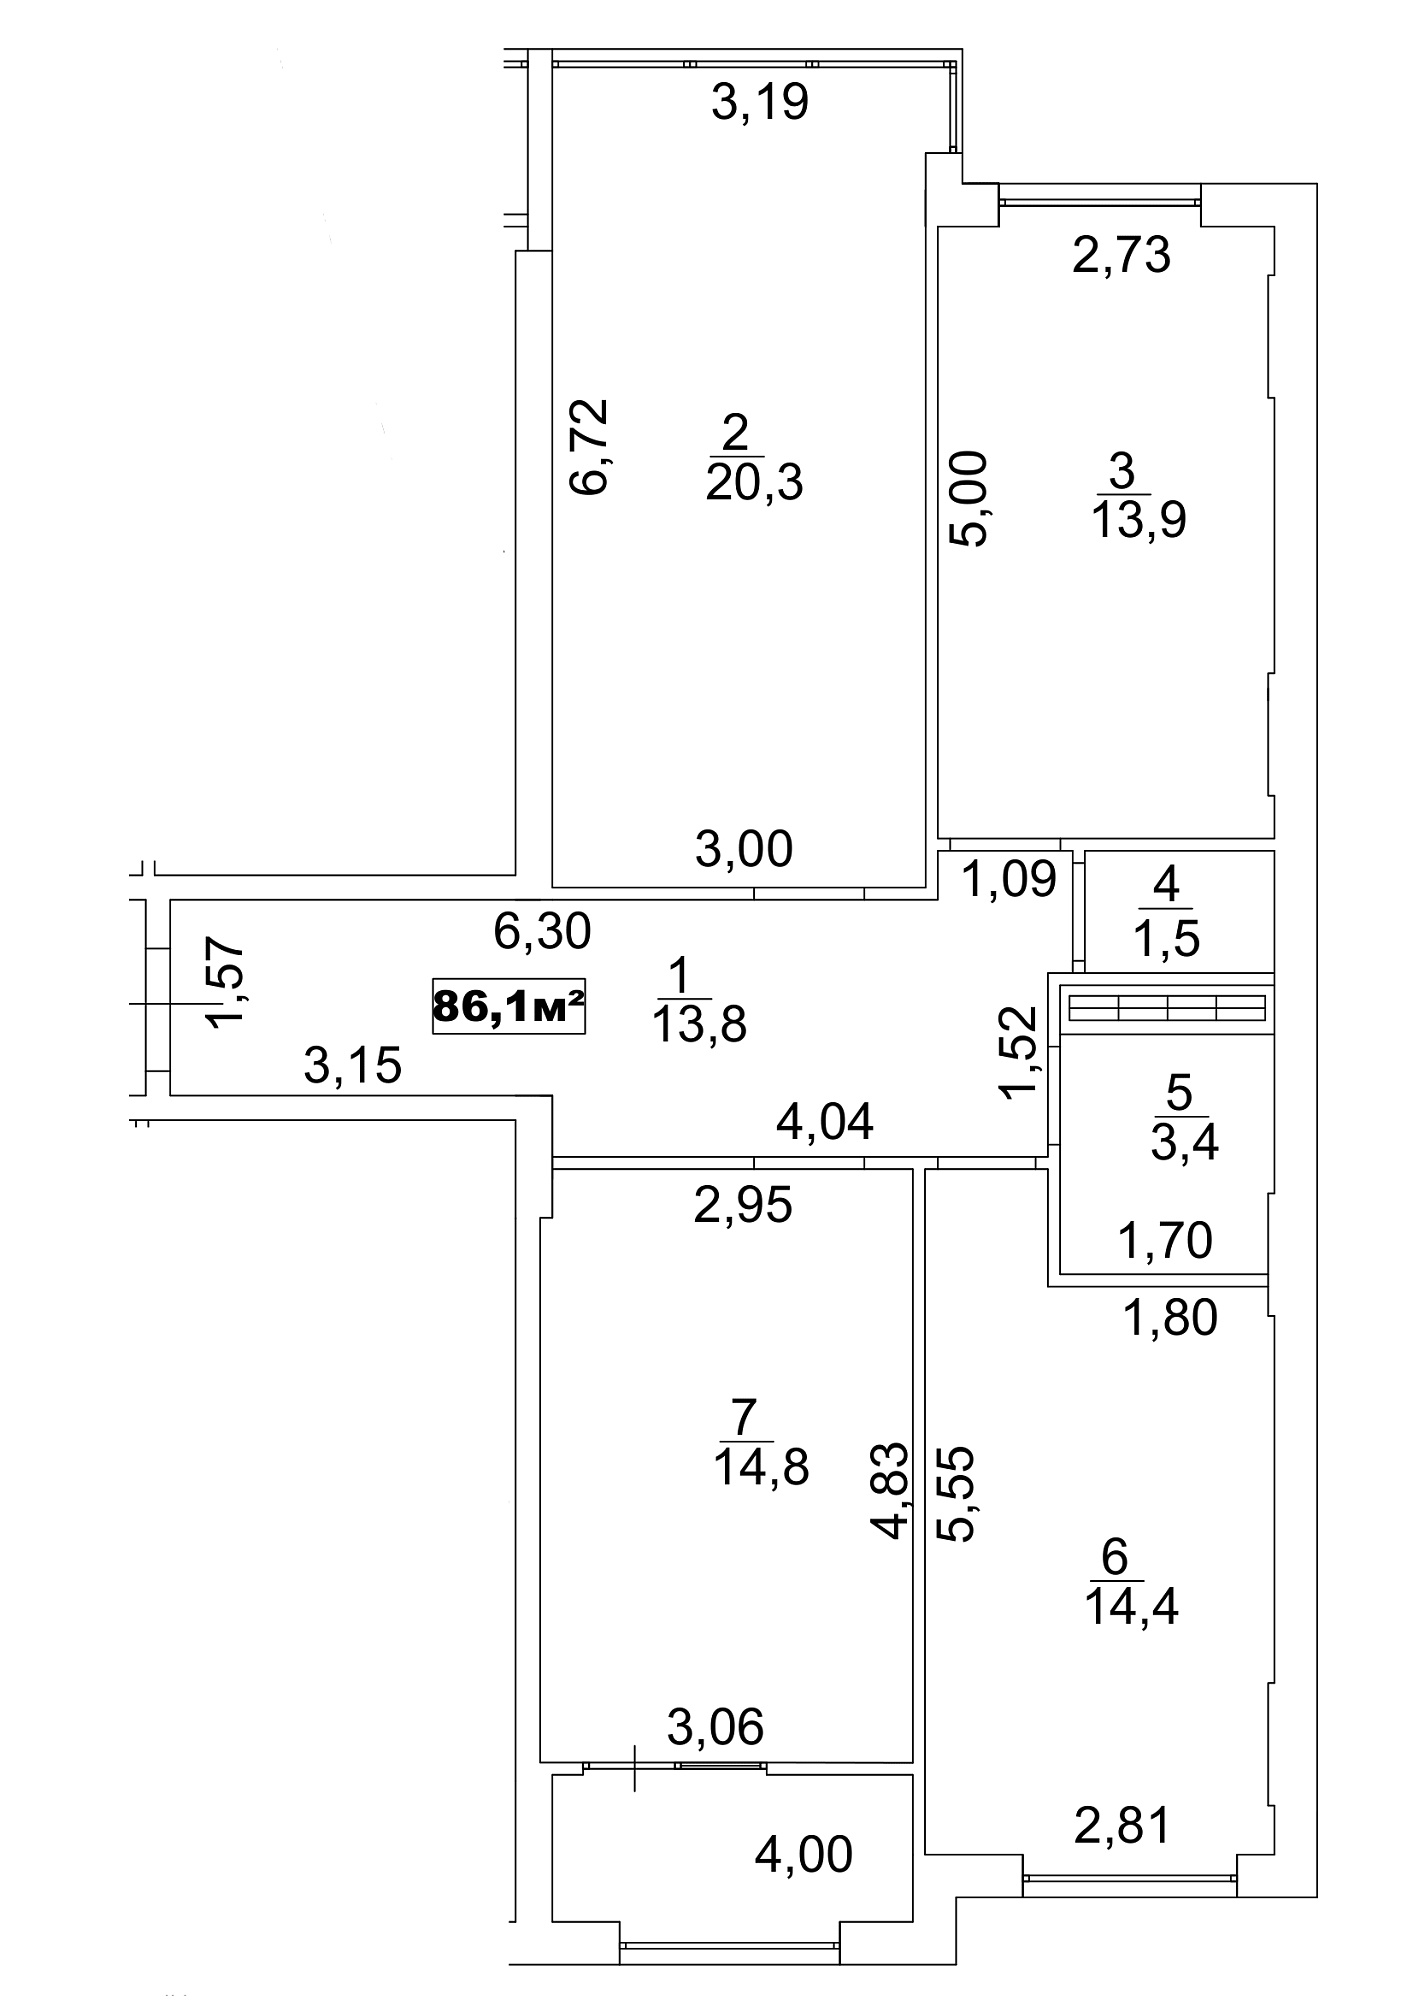 Планировка 3-к квартира площей 86.1м2, AB-13-02/00013.